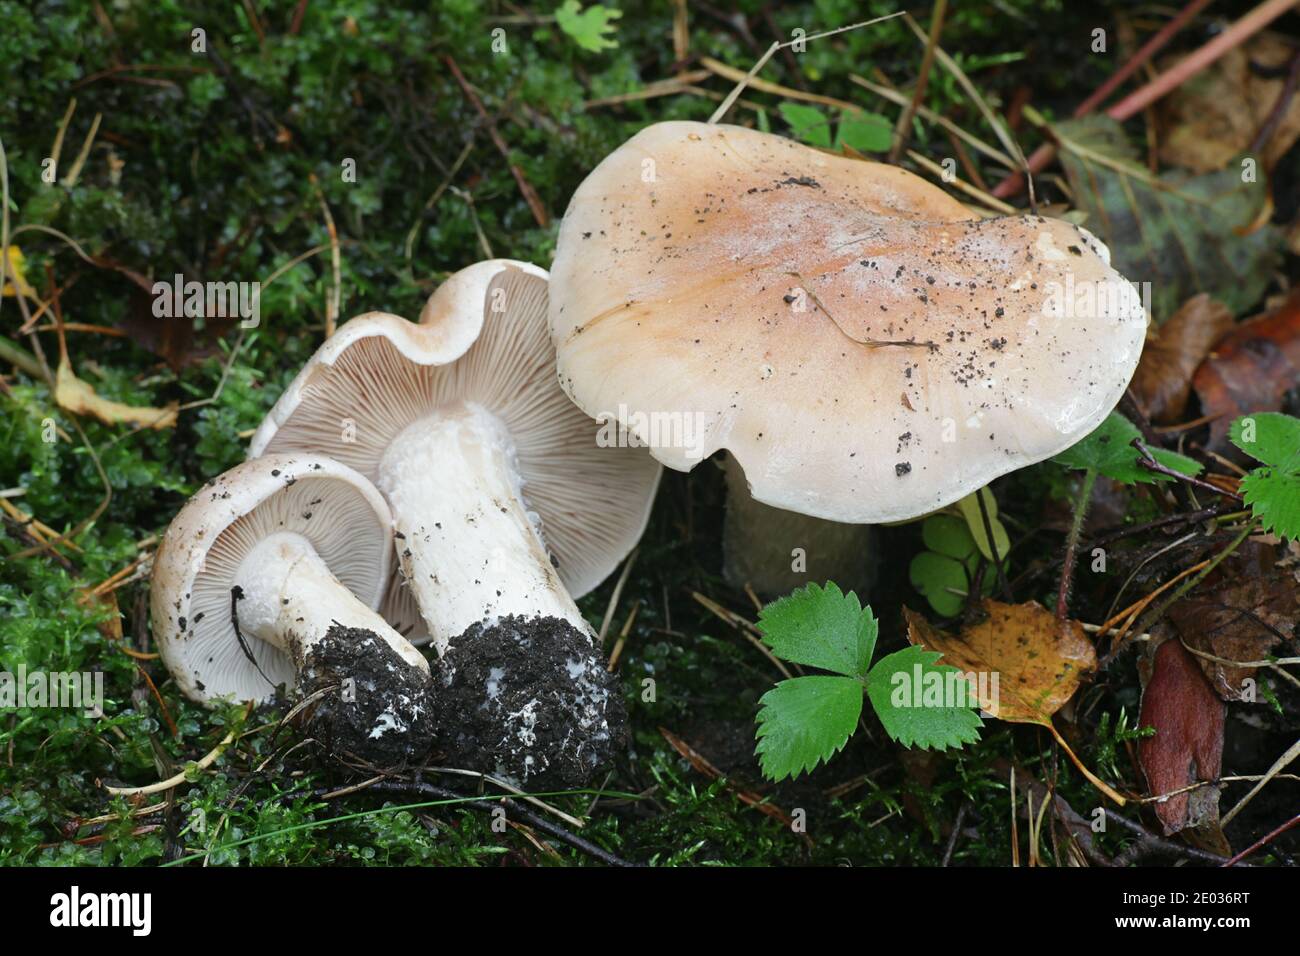 Hebeloma sinapizans, im Allgemeinen bekannt als das roh-gestalkte Hebelom oder bittere Giftepose, wilder Pilz aus Finnland Stockfoto